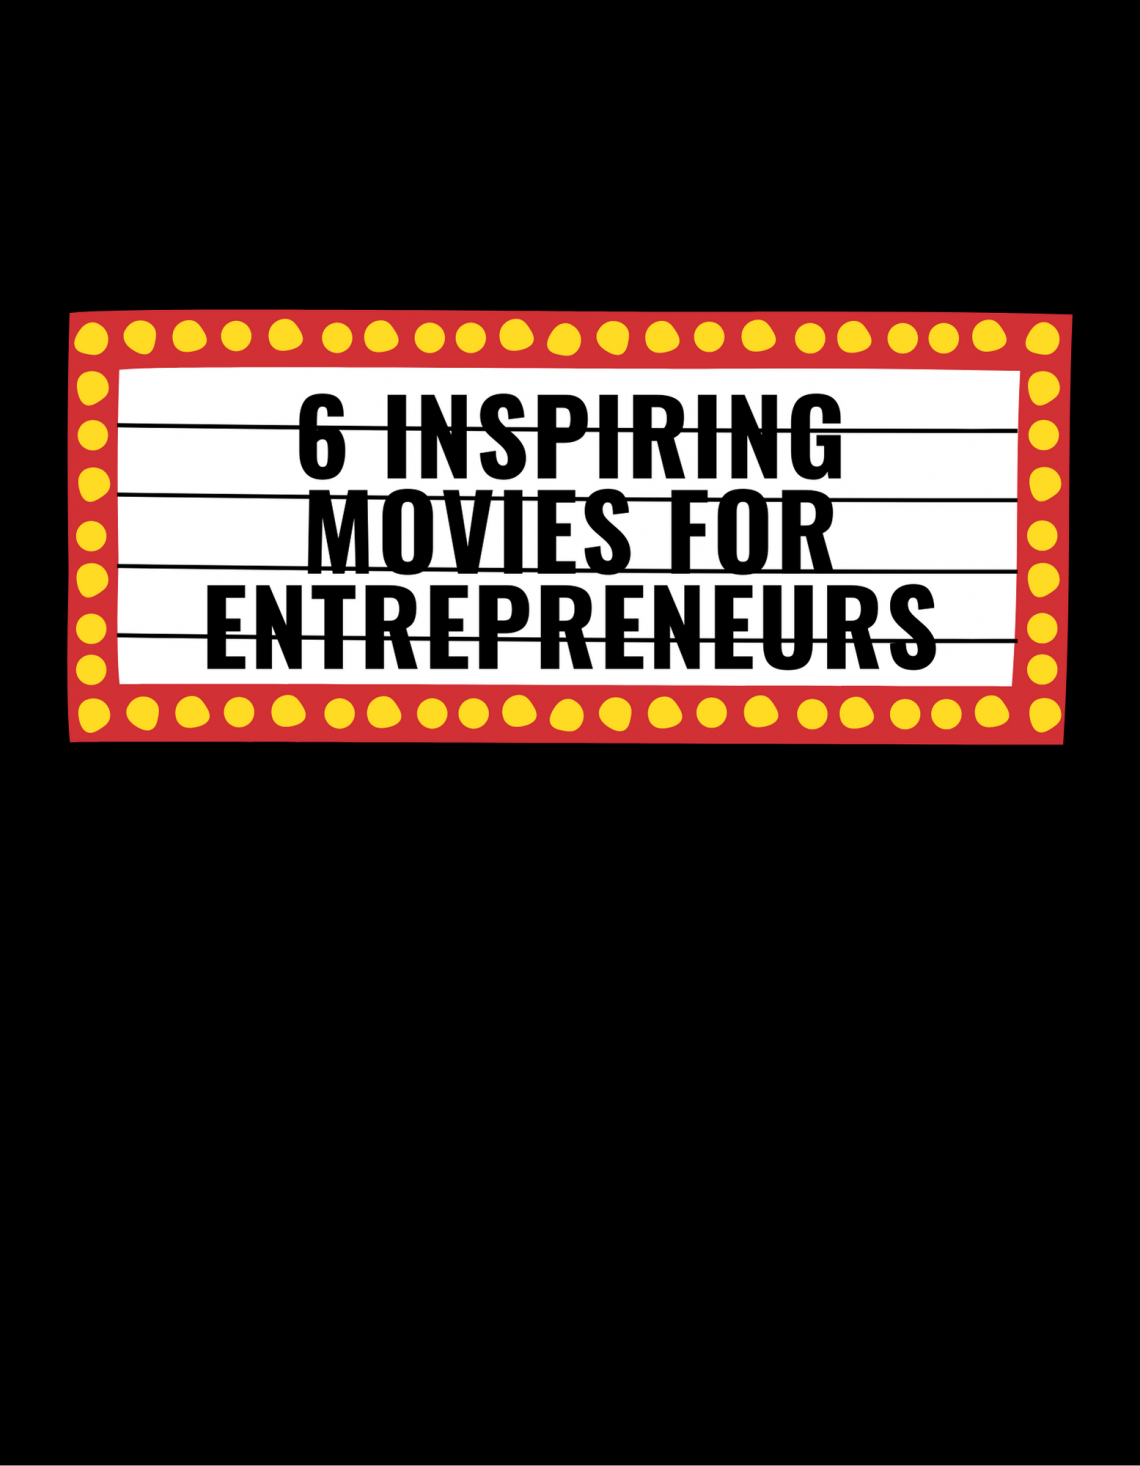 6 Inspiring Movies for Entrepreneurs